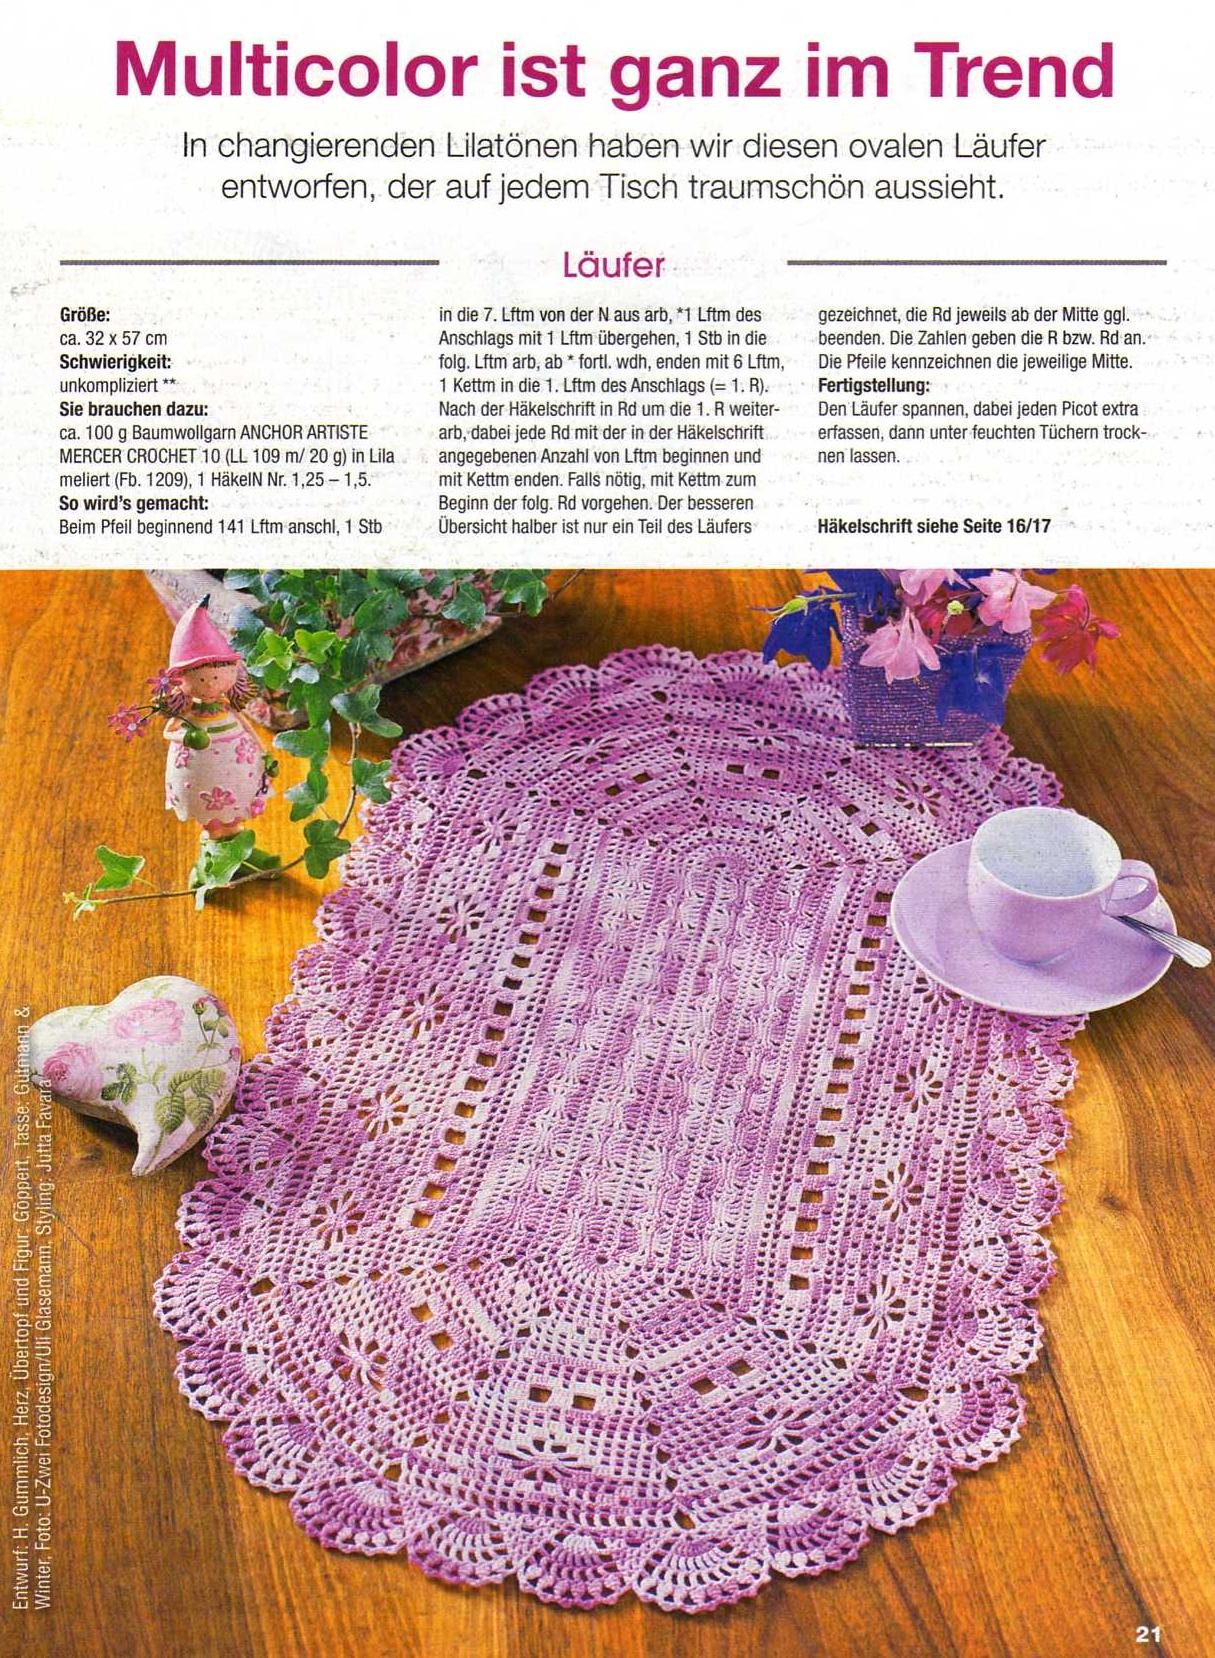 Crochet oval breakfast placemat (1)